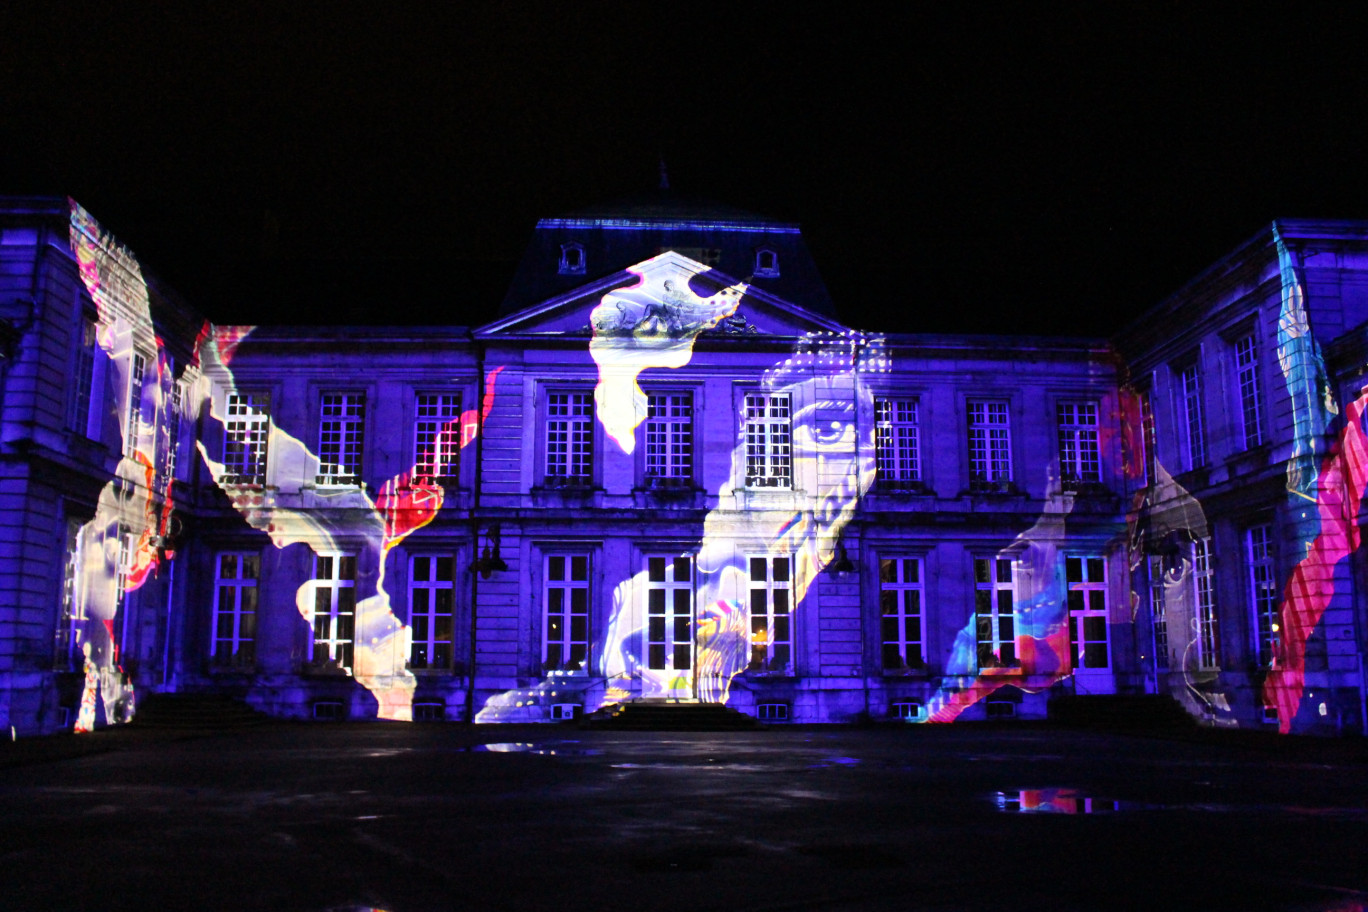 Un acte 1 de Soissons en lumières a déjà eu lieu en amuse-bouche durant les dernières festivités de Noël : des séquences de six minutes projetées notamment sur l'hôtel de ville.